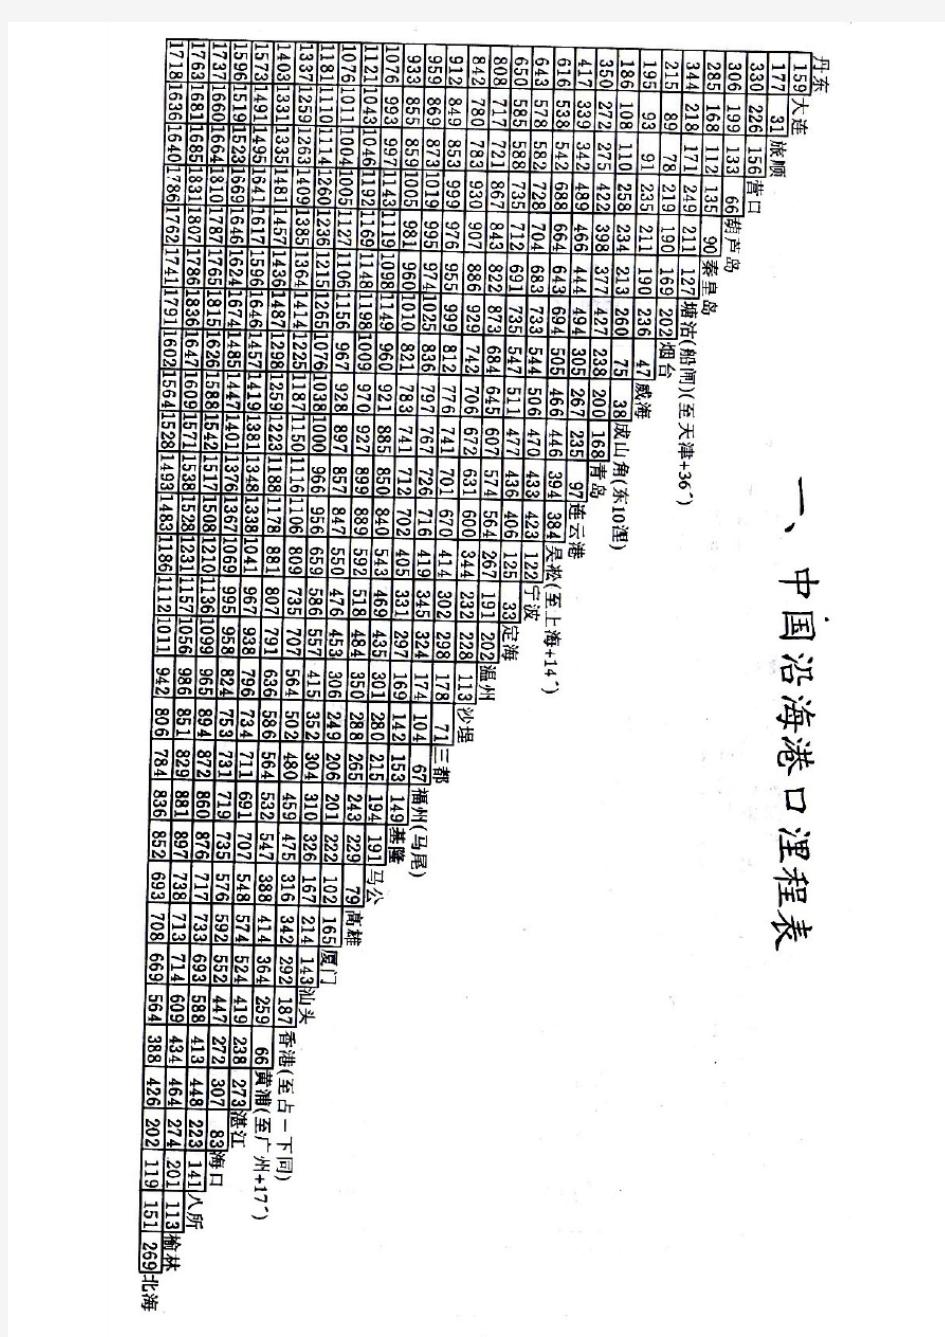 中国沿海港口里程表